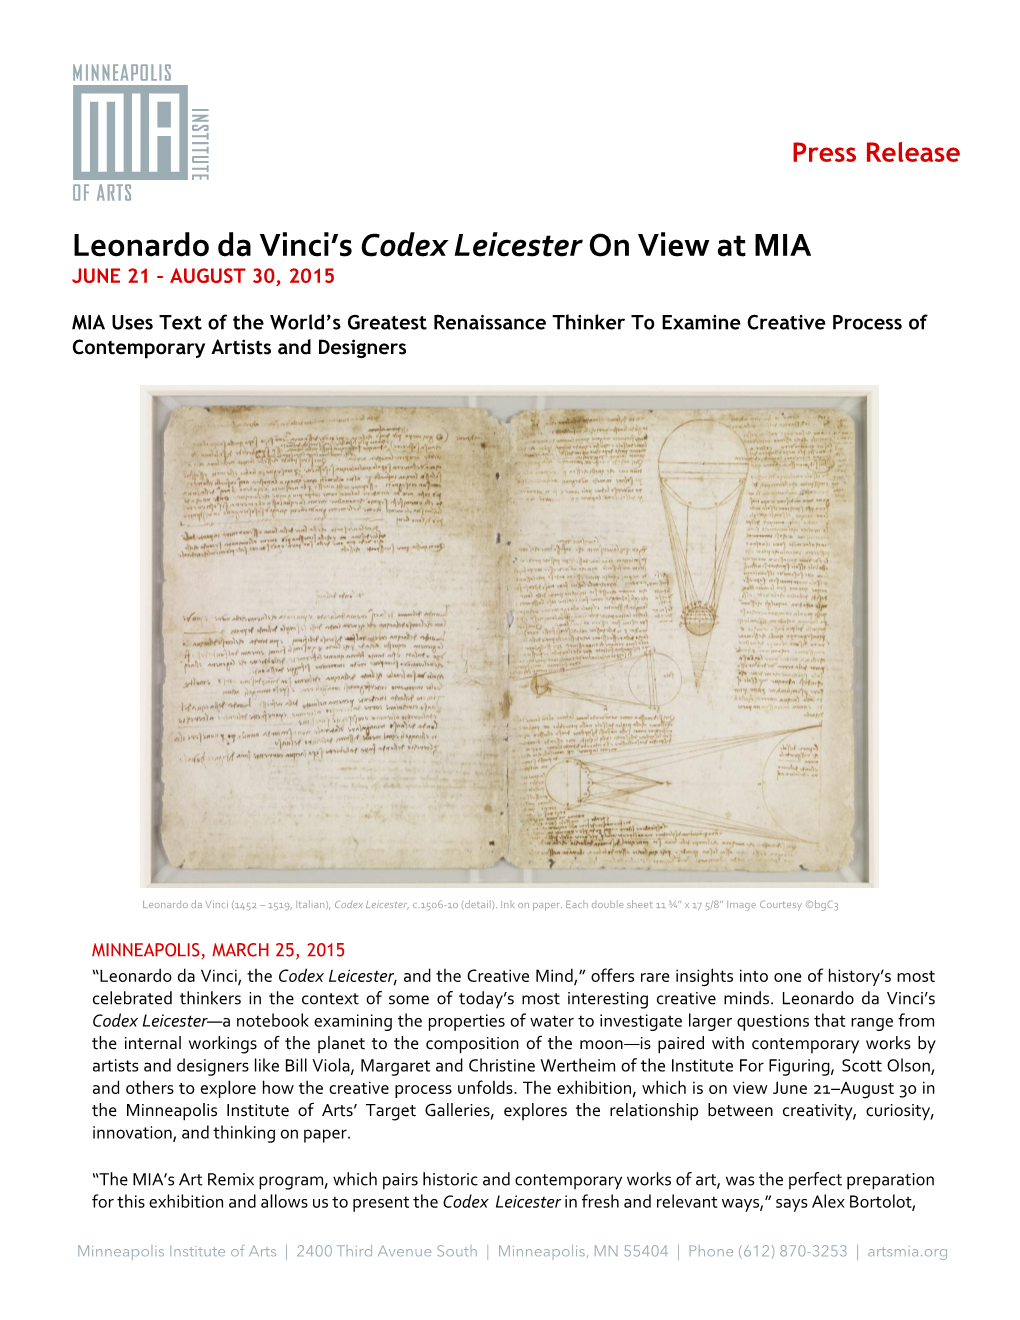 Leonardo Da Vinci's Codex Leicester on View At